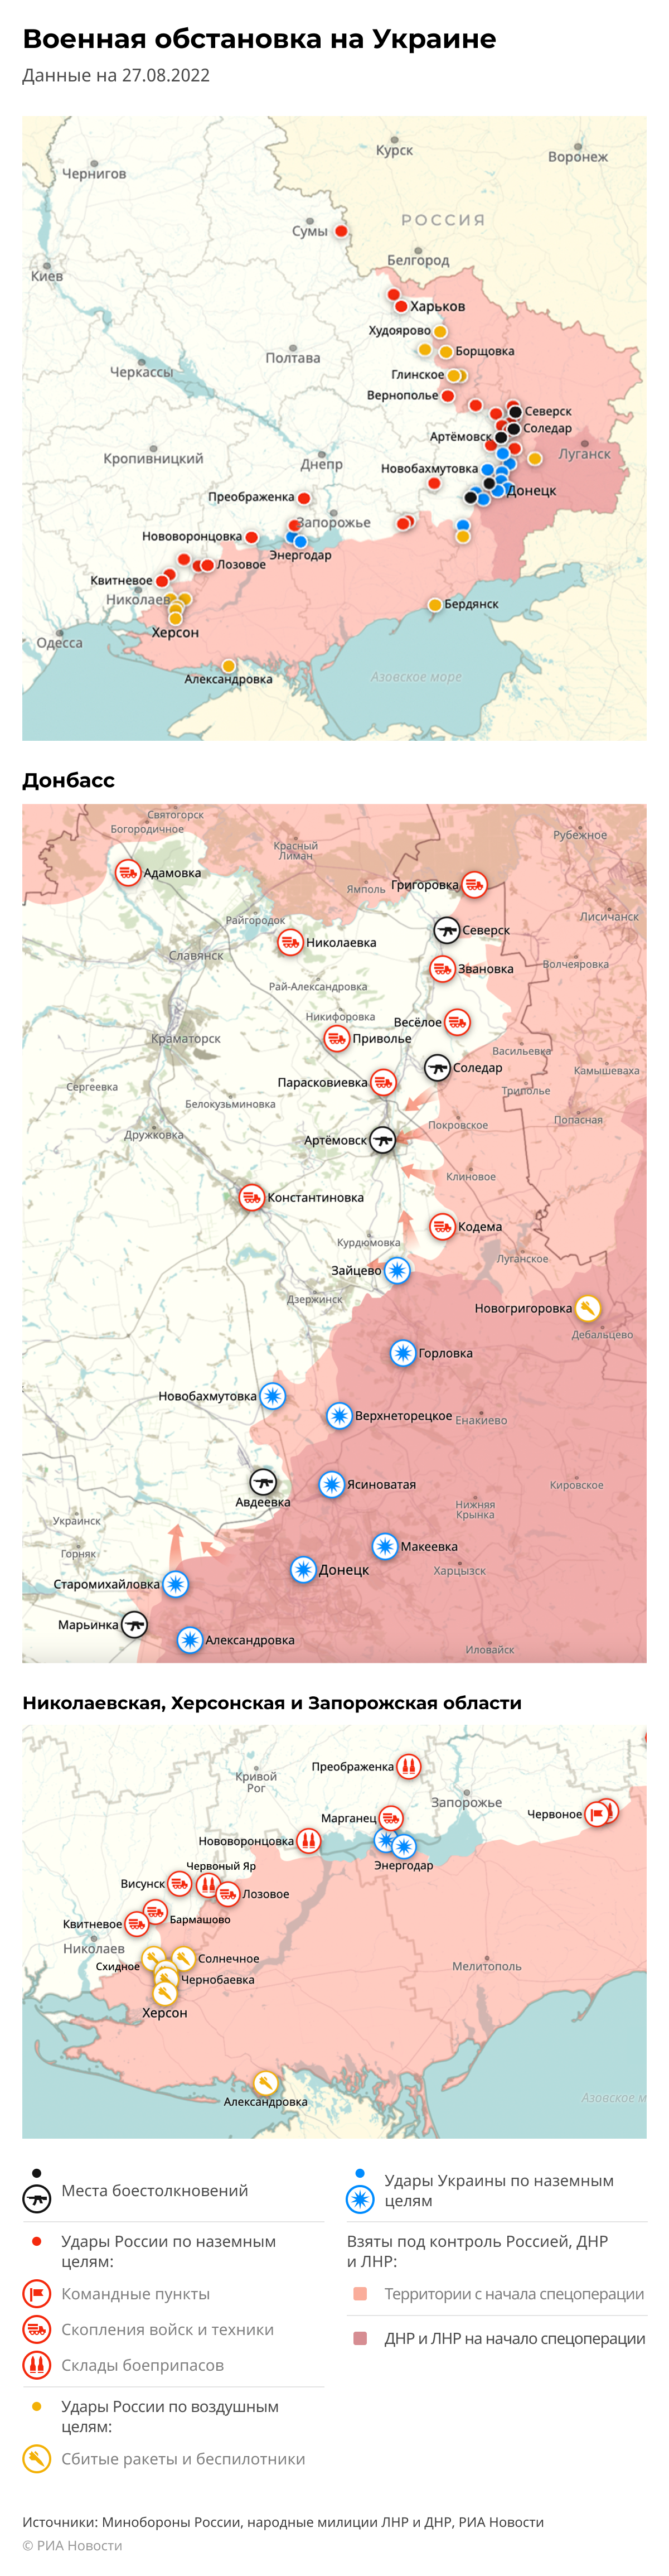 Бои на украине 08.03 2024. Карта украинских боевых действий на сегодня. Карта военных действий на Украине 2022 на сегодня. Карта боевых действий на Украине на 22 августа 2022 года. Карта боевых действий на Донбассе на сегодня 2022.